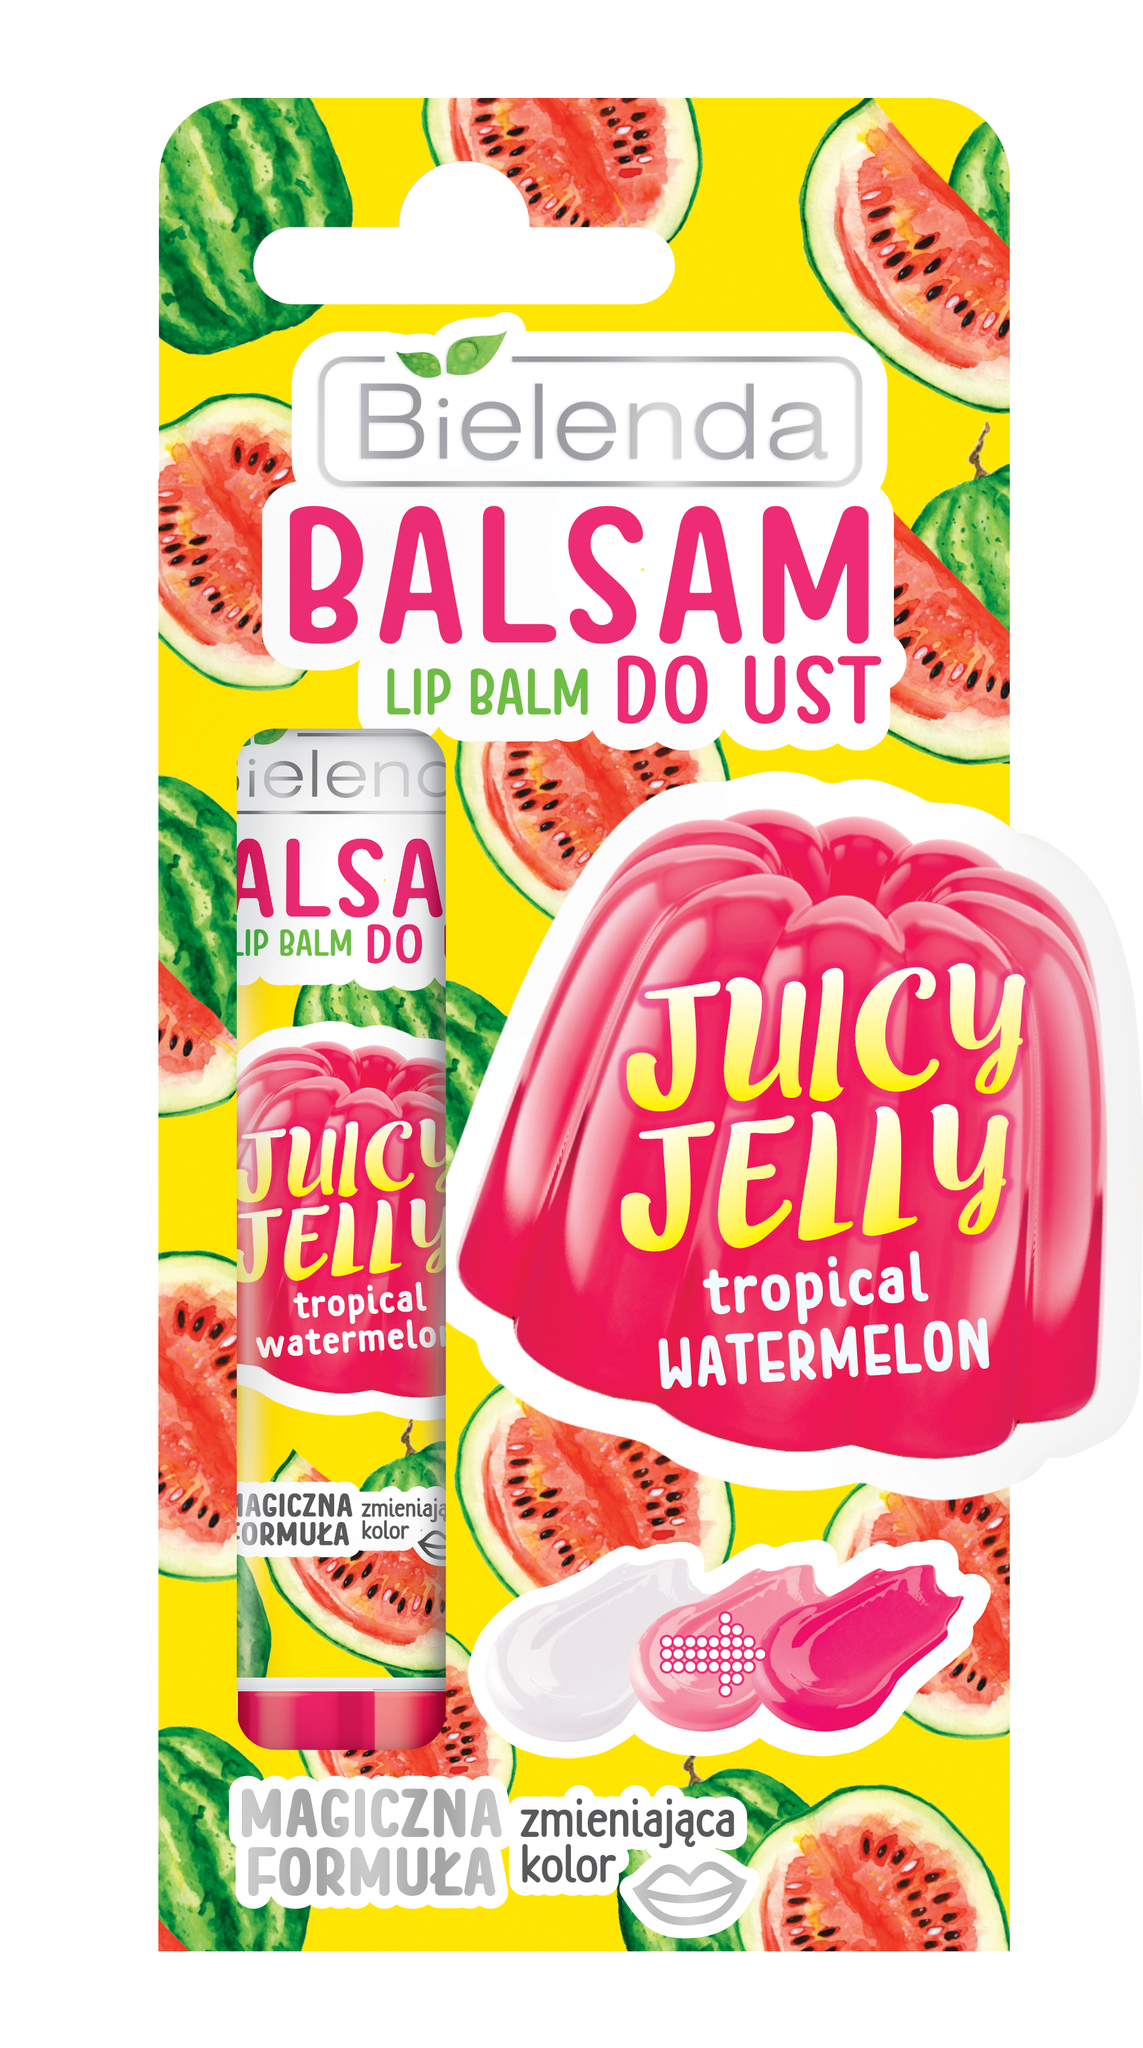 JUICY JELLY Бальзам для губ меняющий цвет - тропикальный арбуз